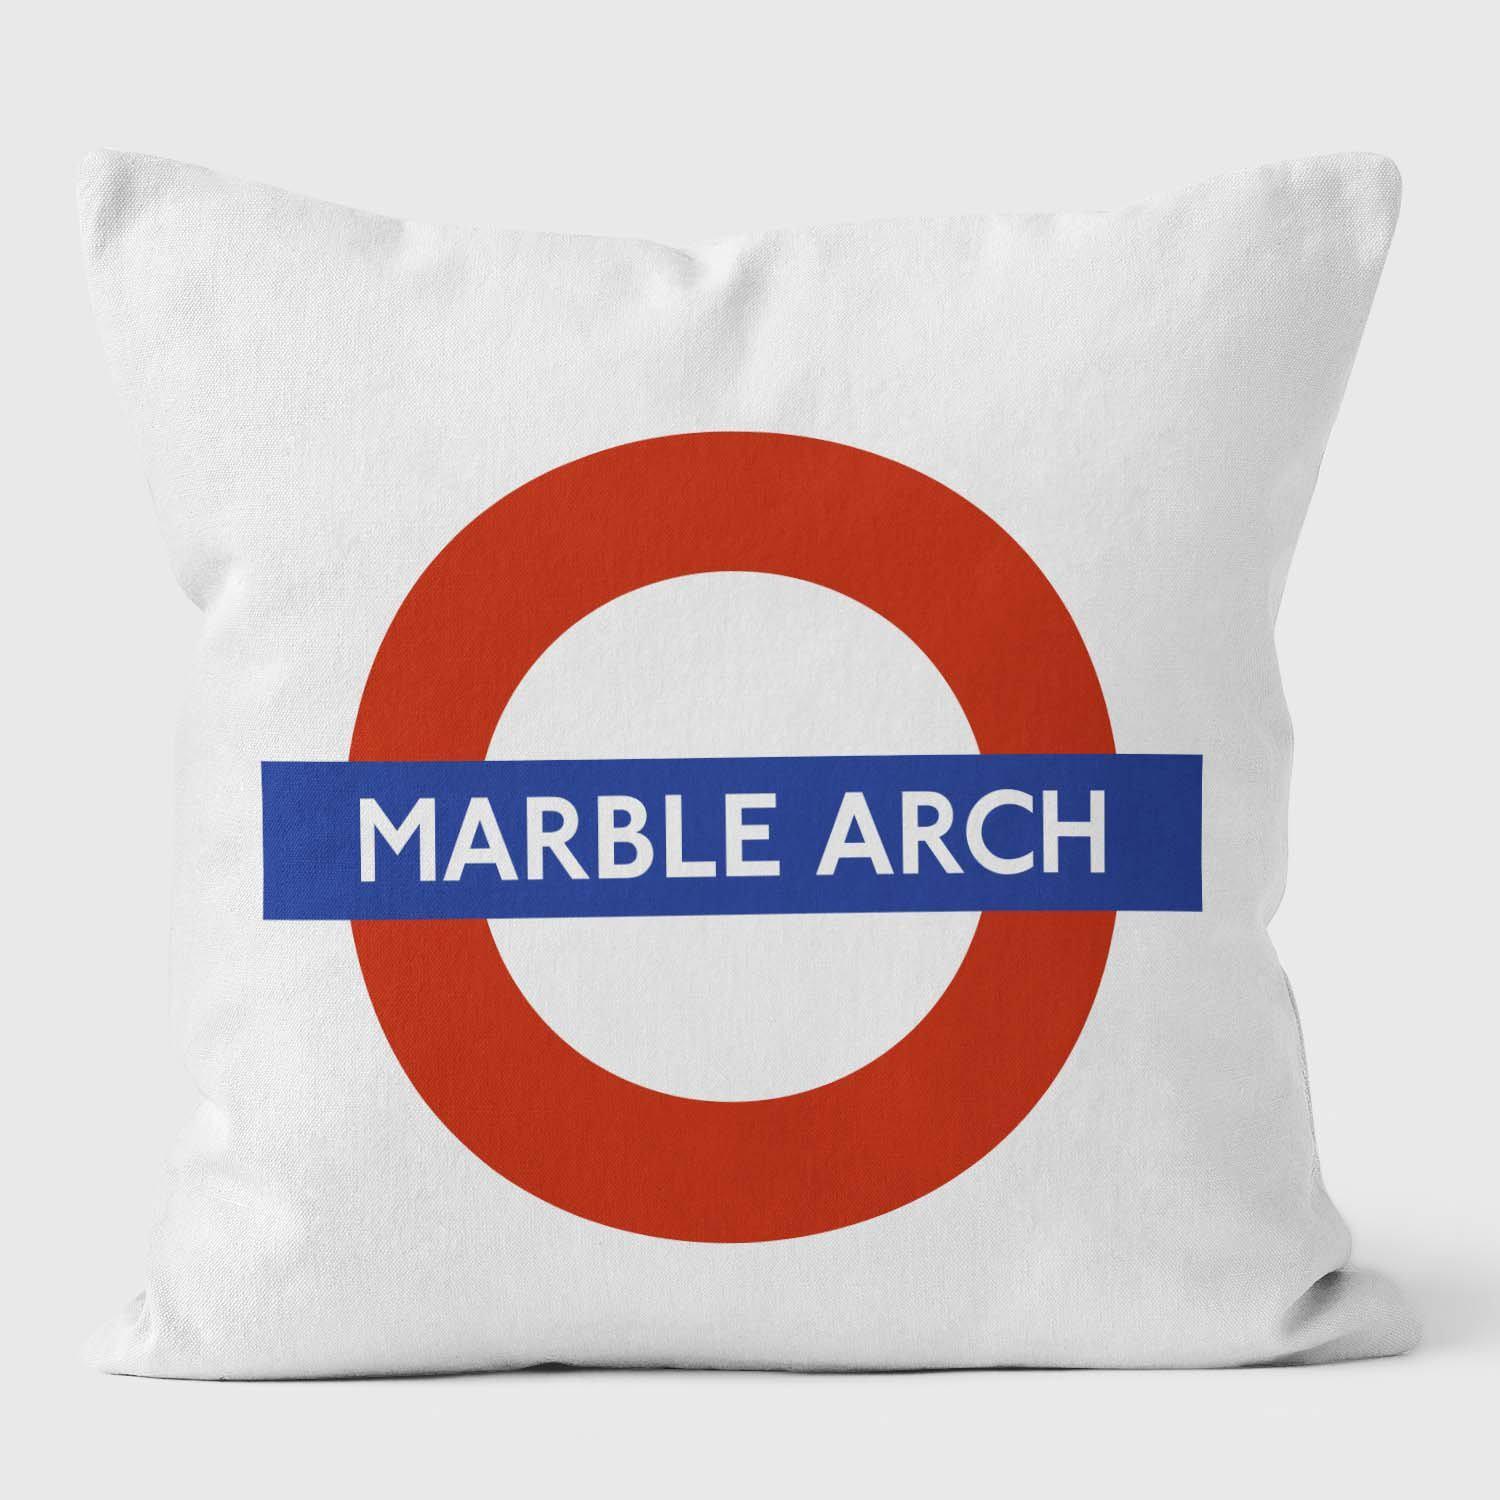 Marble Arch London Underground Tube Station Roundel Cushion - Handmade Cushions UK - WeLoveCushions